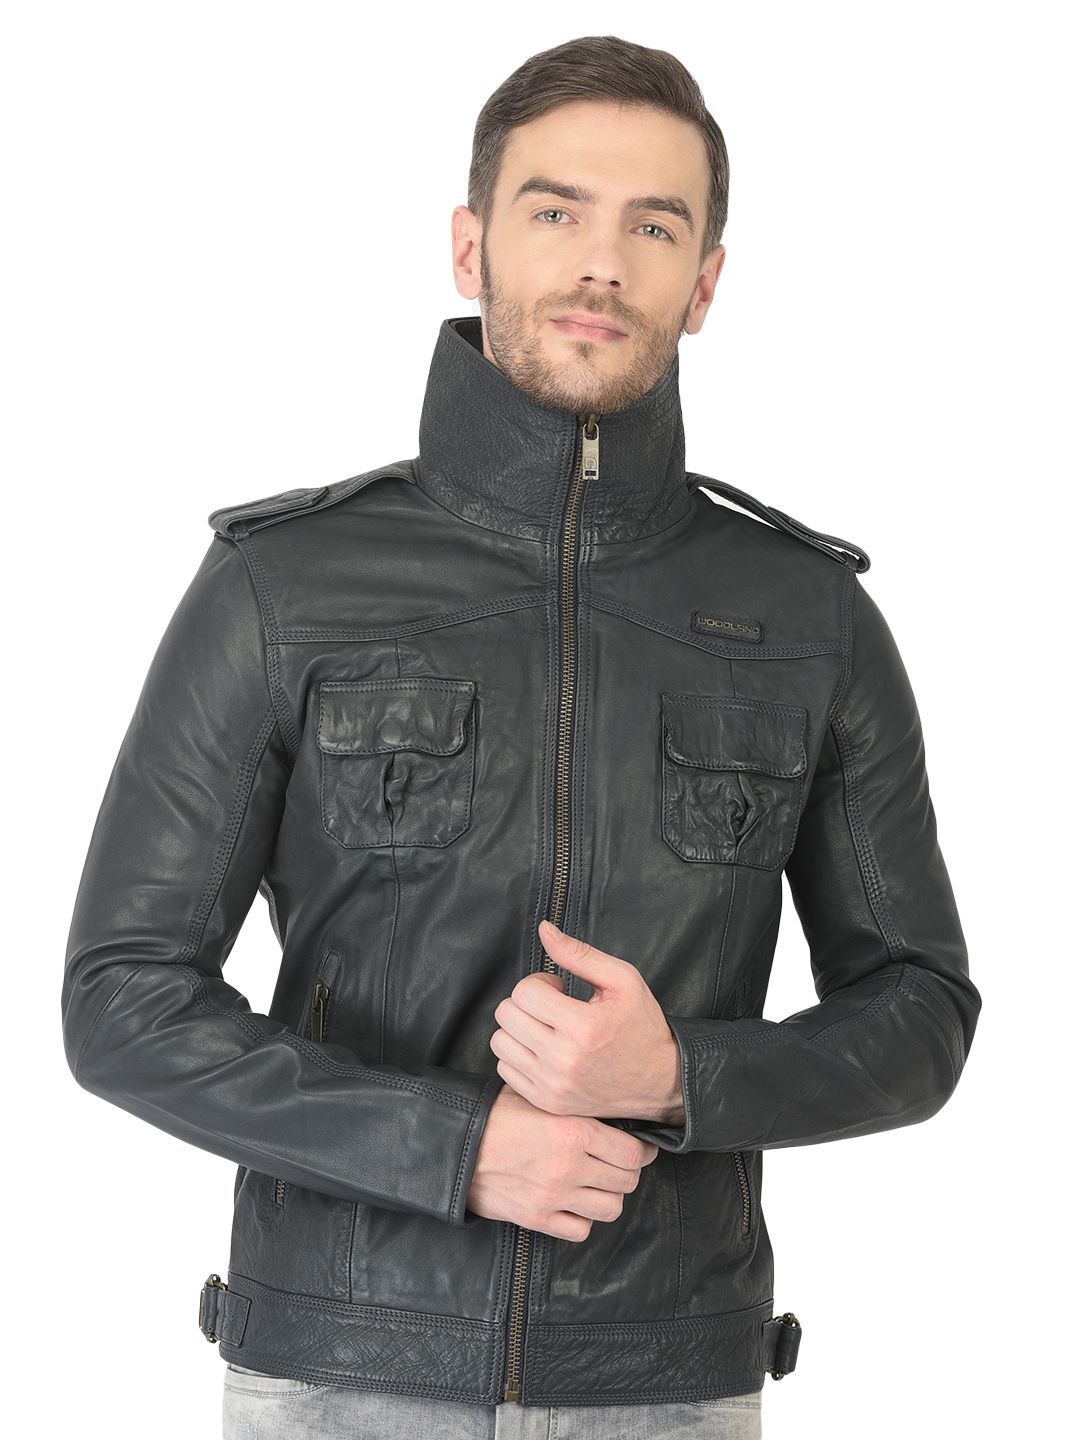 Premium Quality Soft Lambskin Blue Leather Jacket for Mens Soft Leather  Biker Jacket for Men Gift for Him Stylish Leather Jacket - Etsy